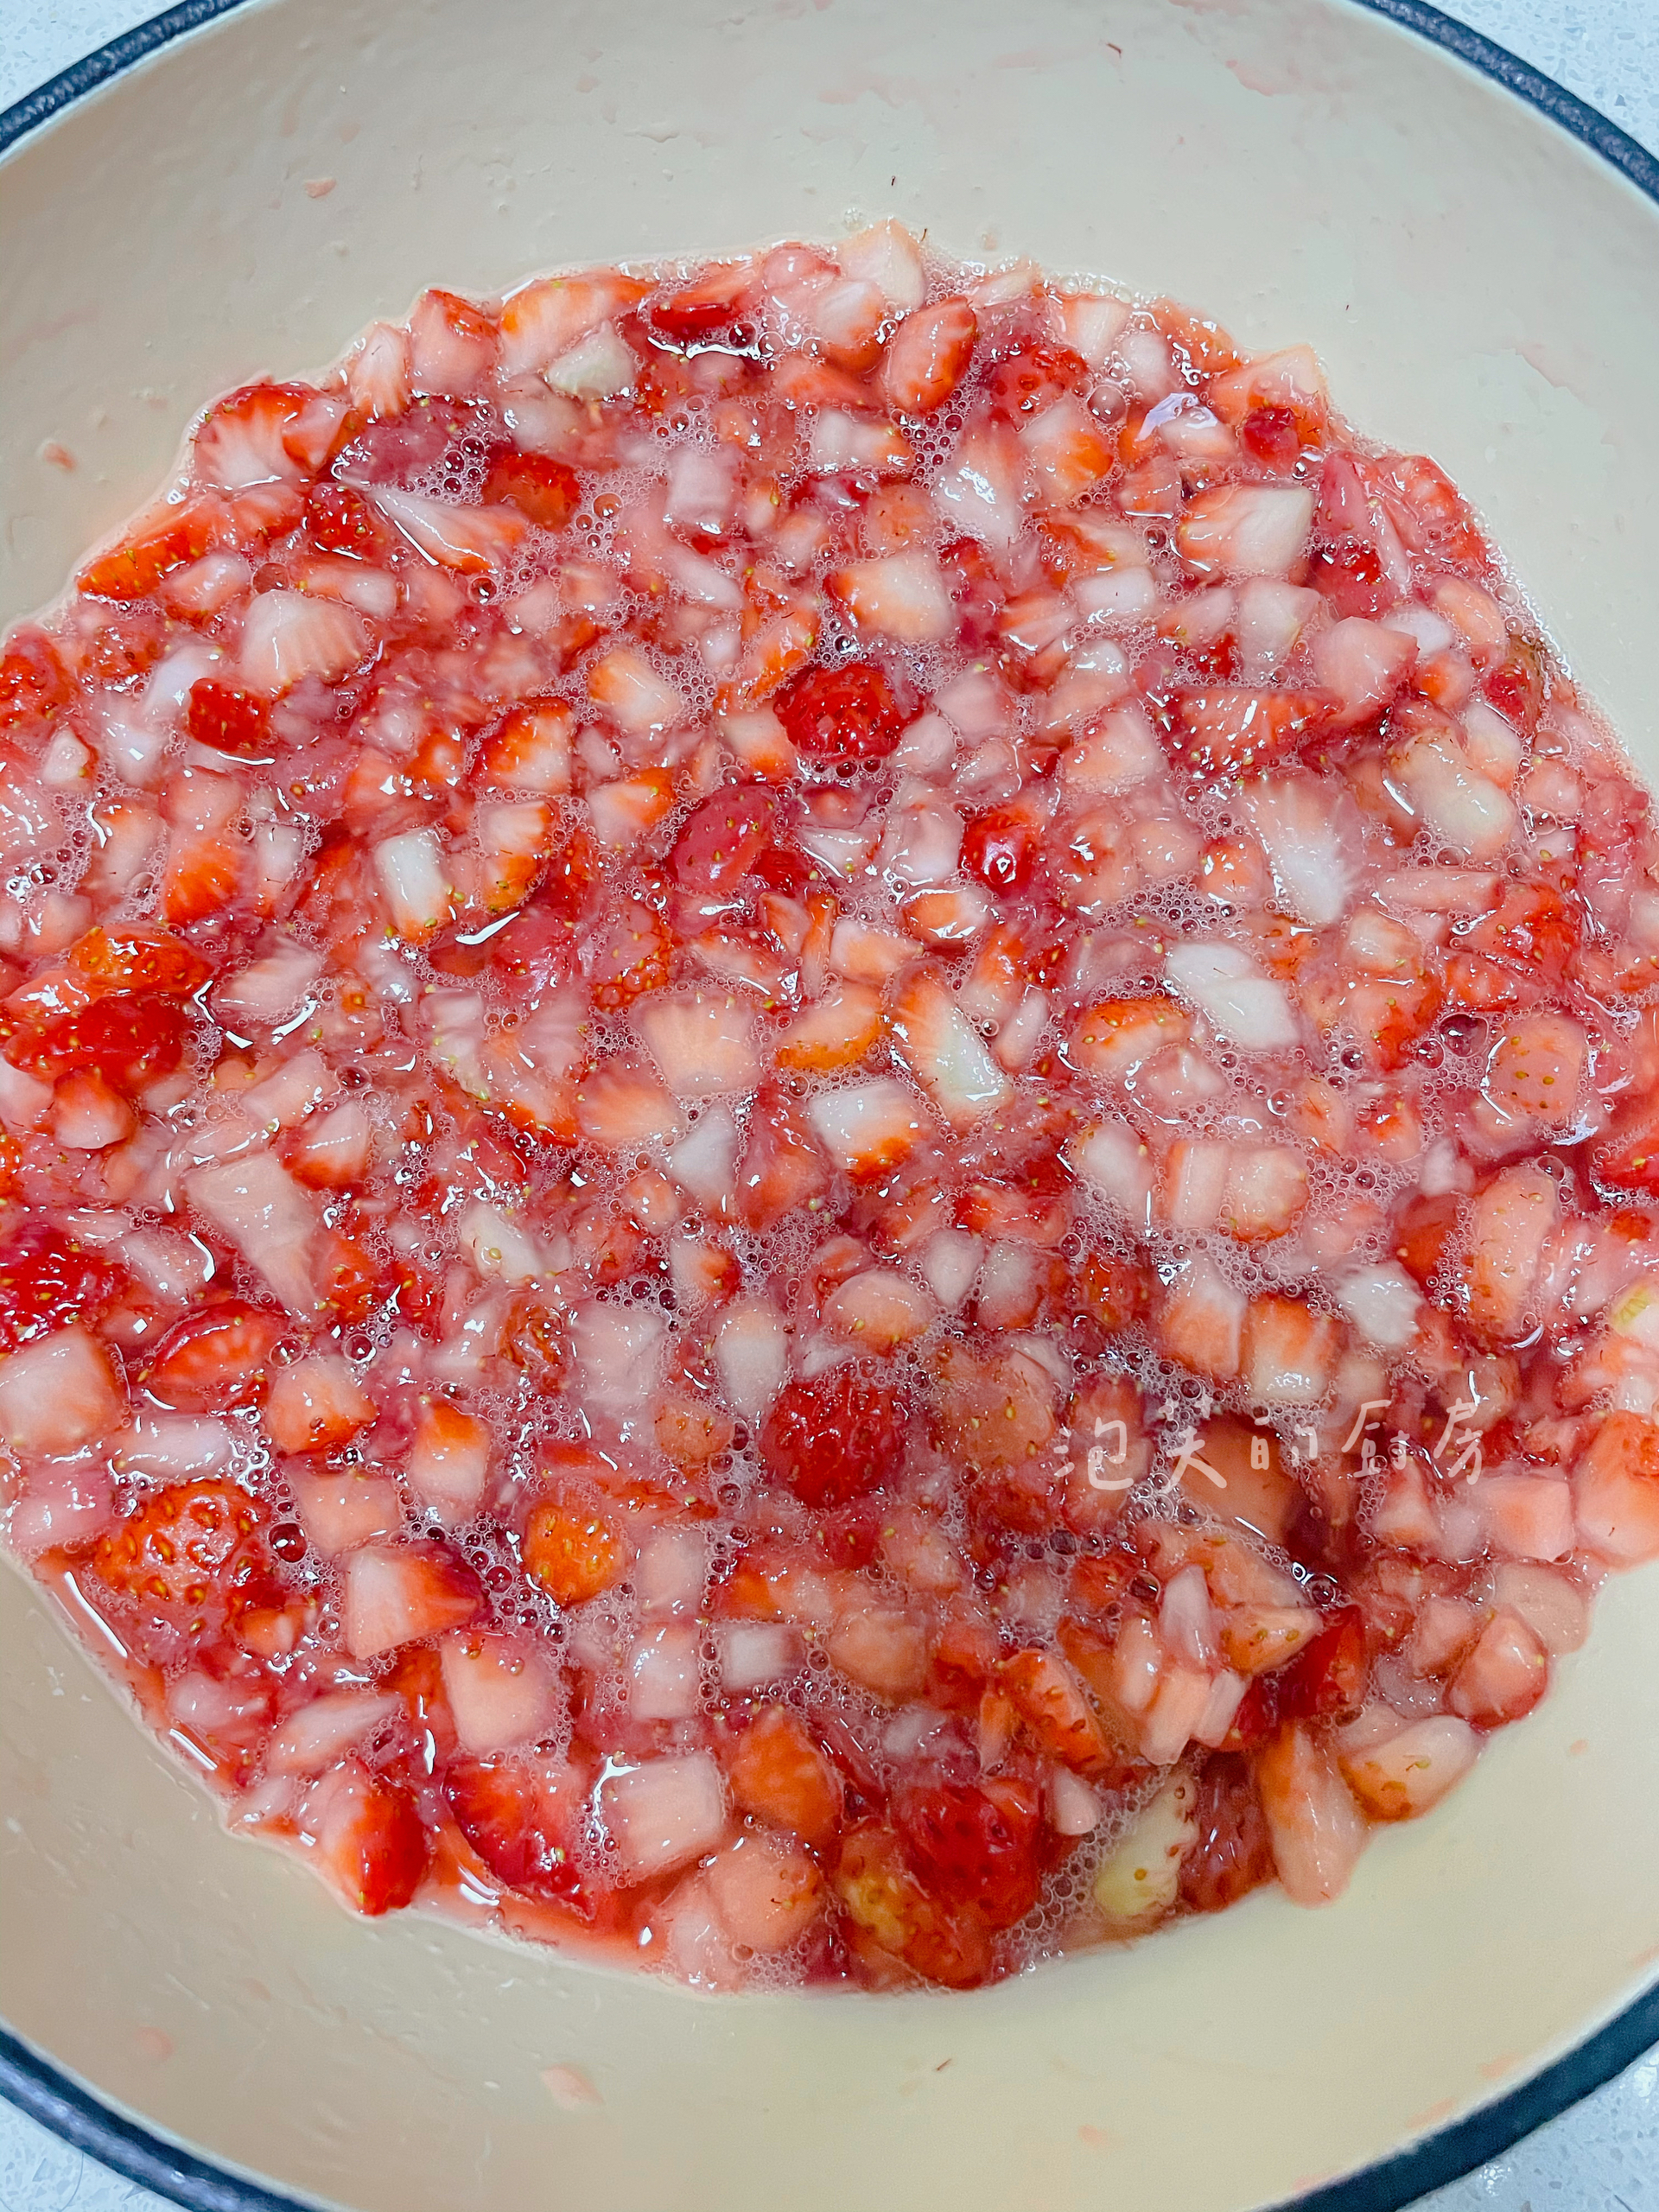 超好吃的草莓酱的做法